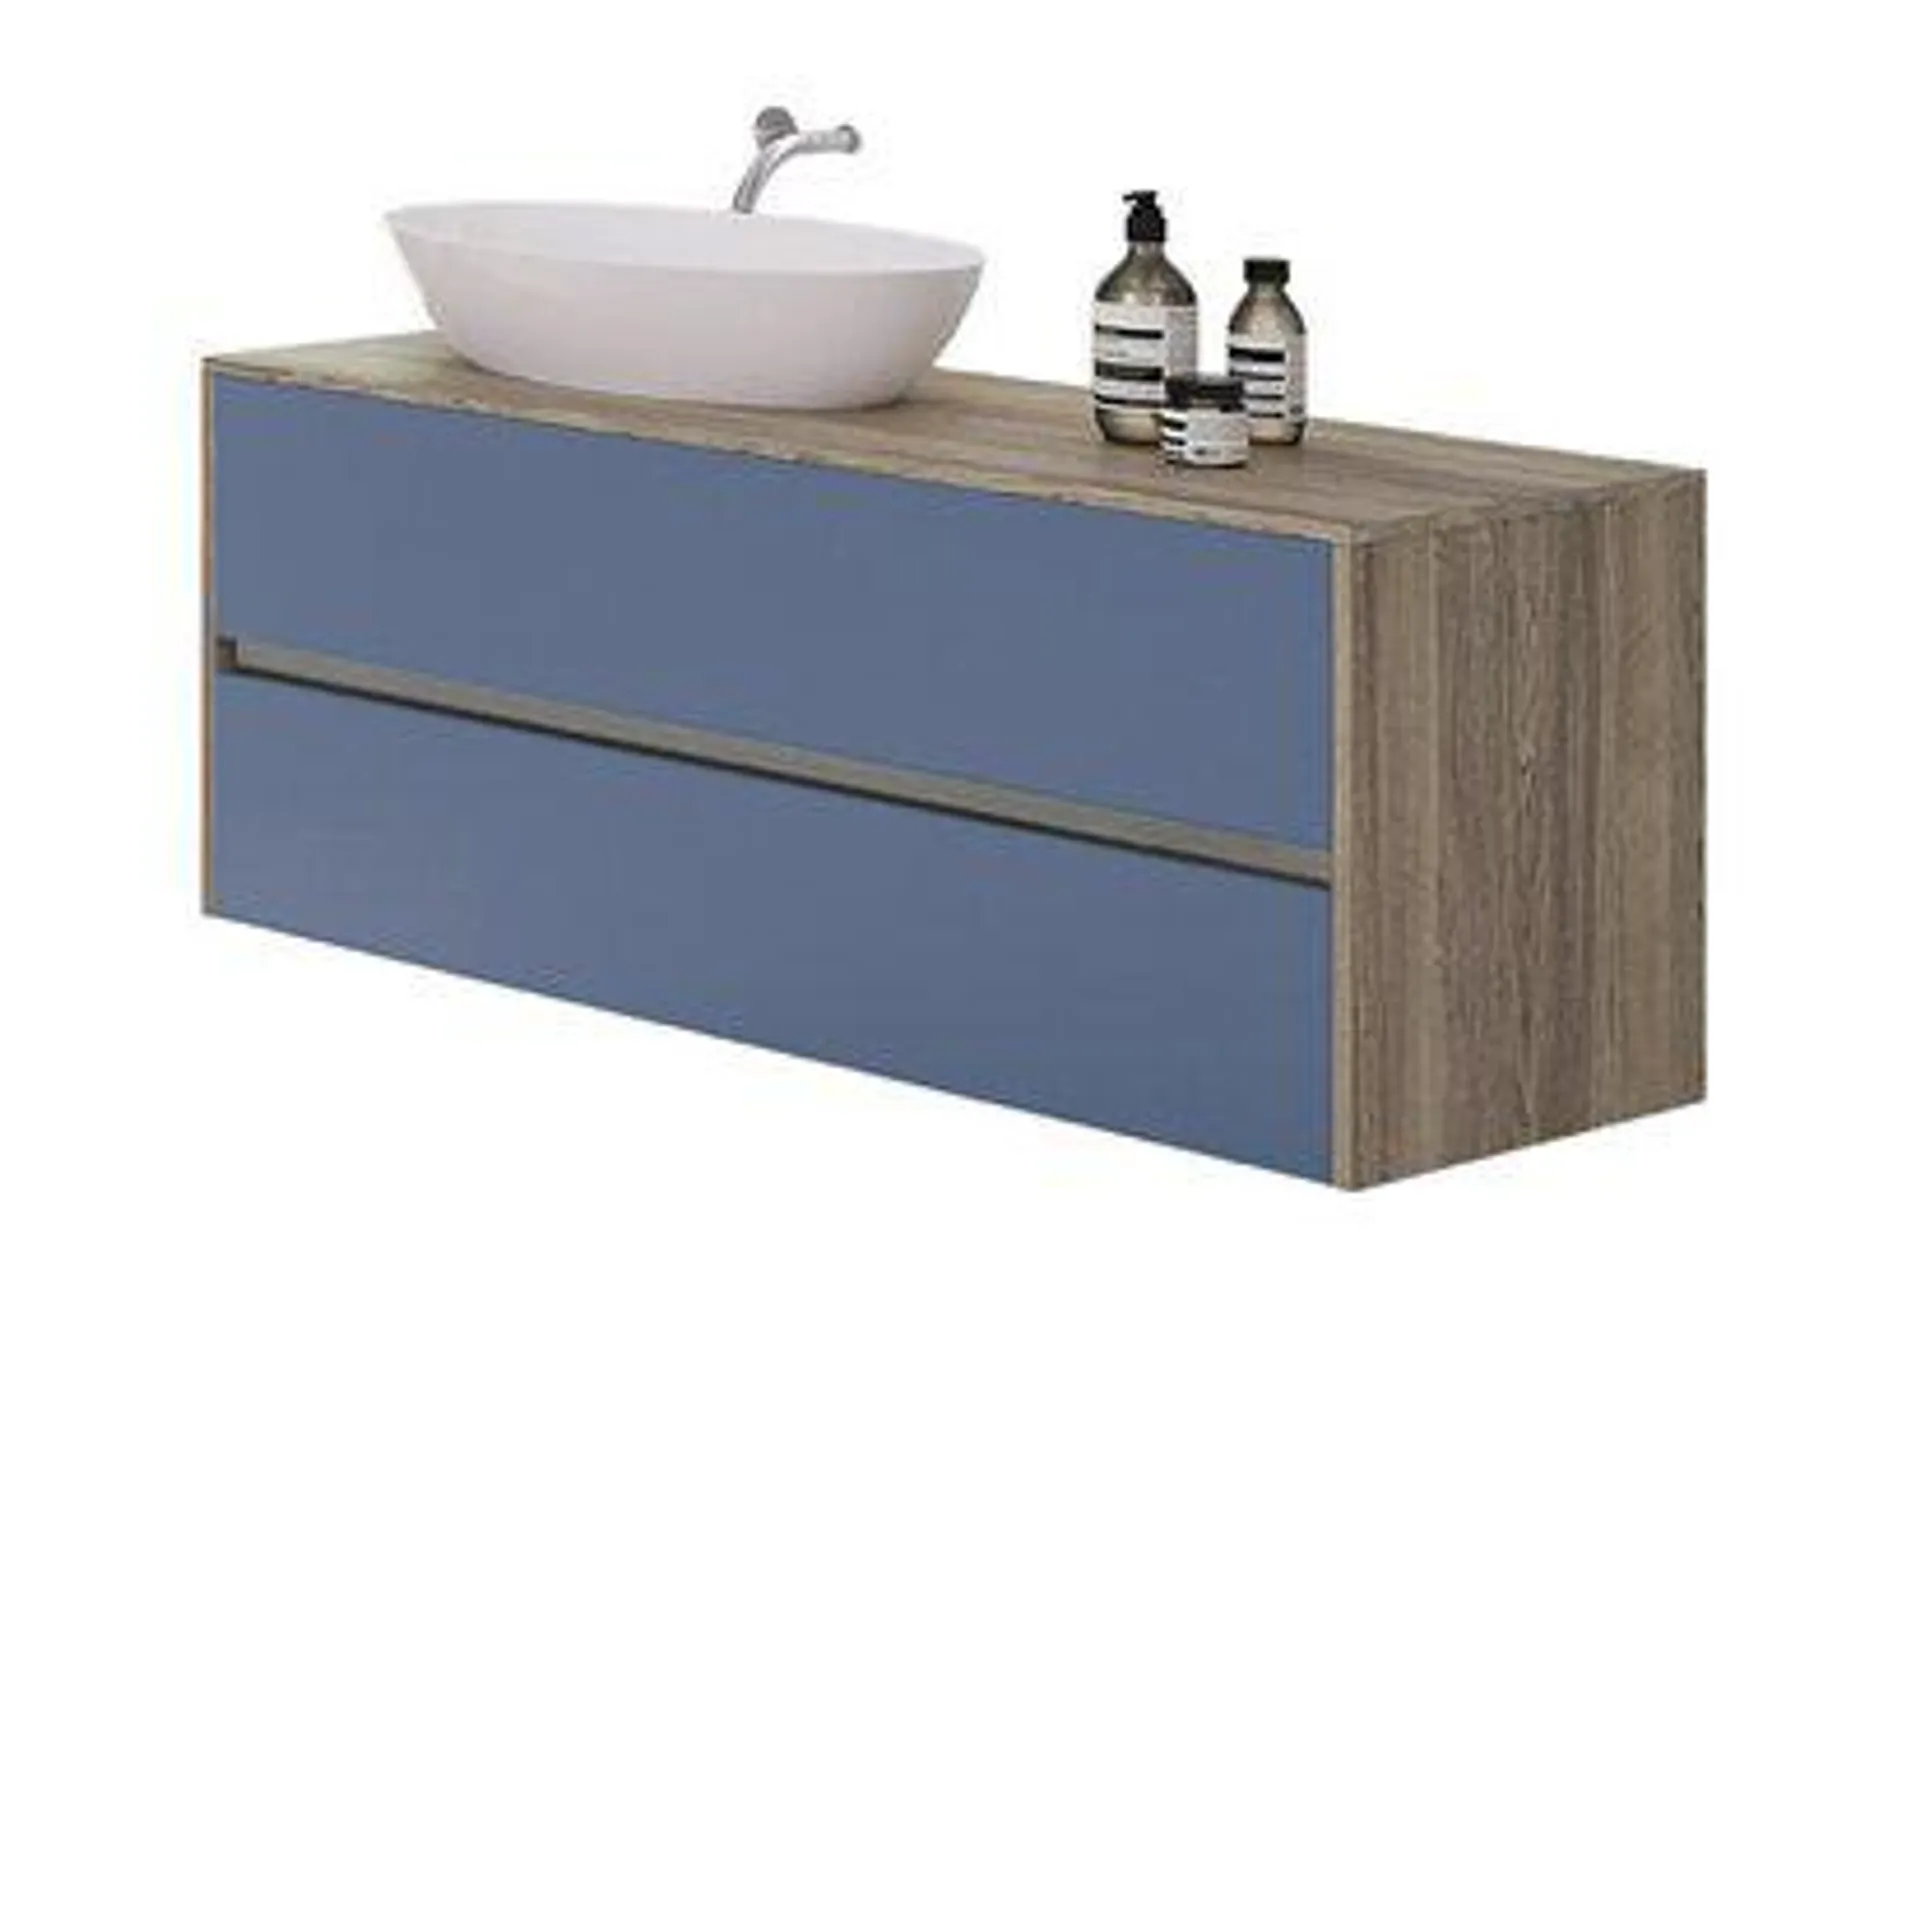 Base per lavabo appoggio 2 cassetti h.52 cm con top legno senza lavabo